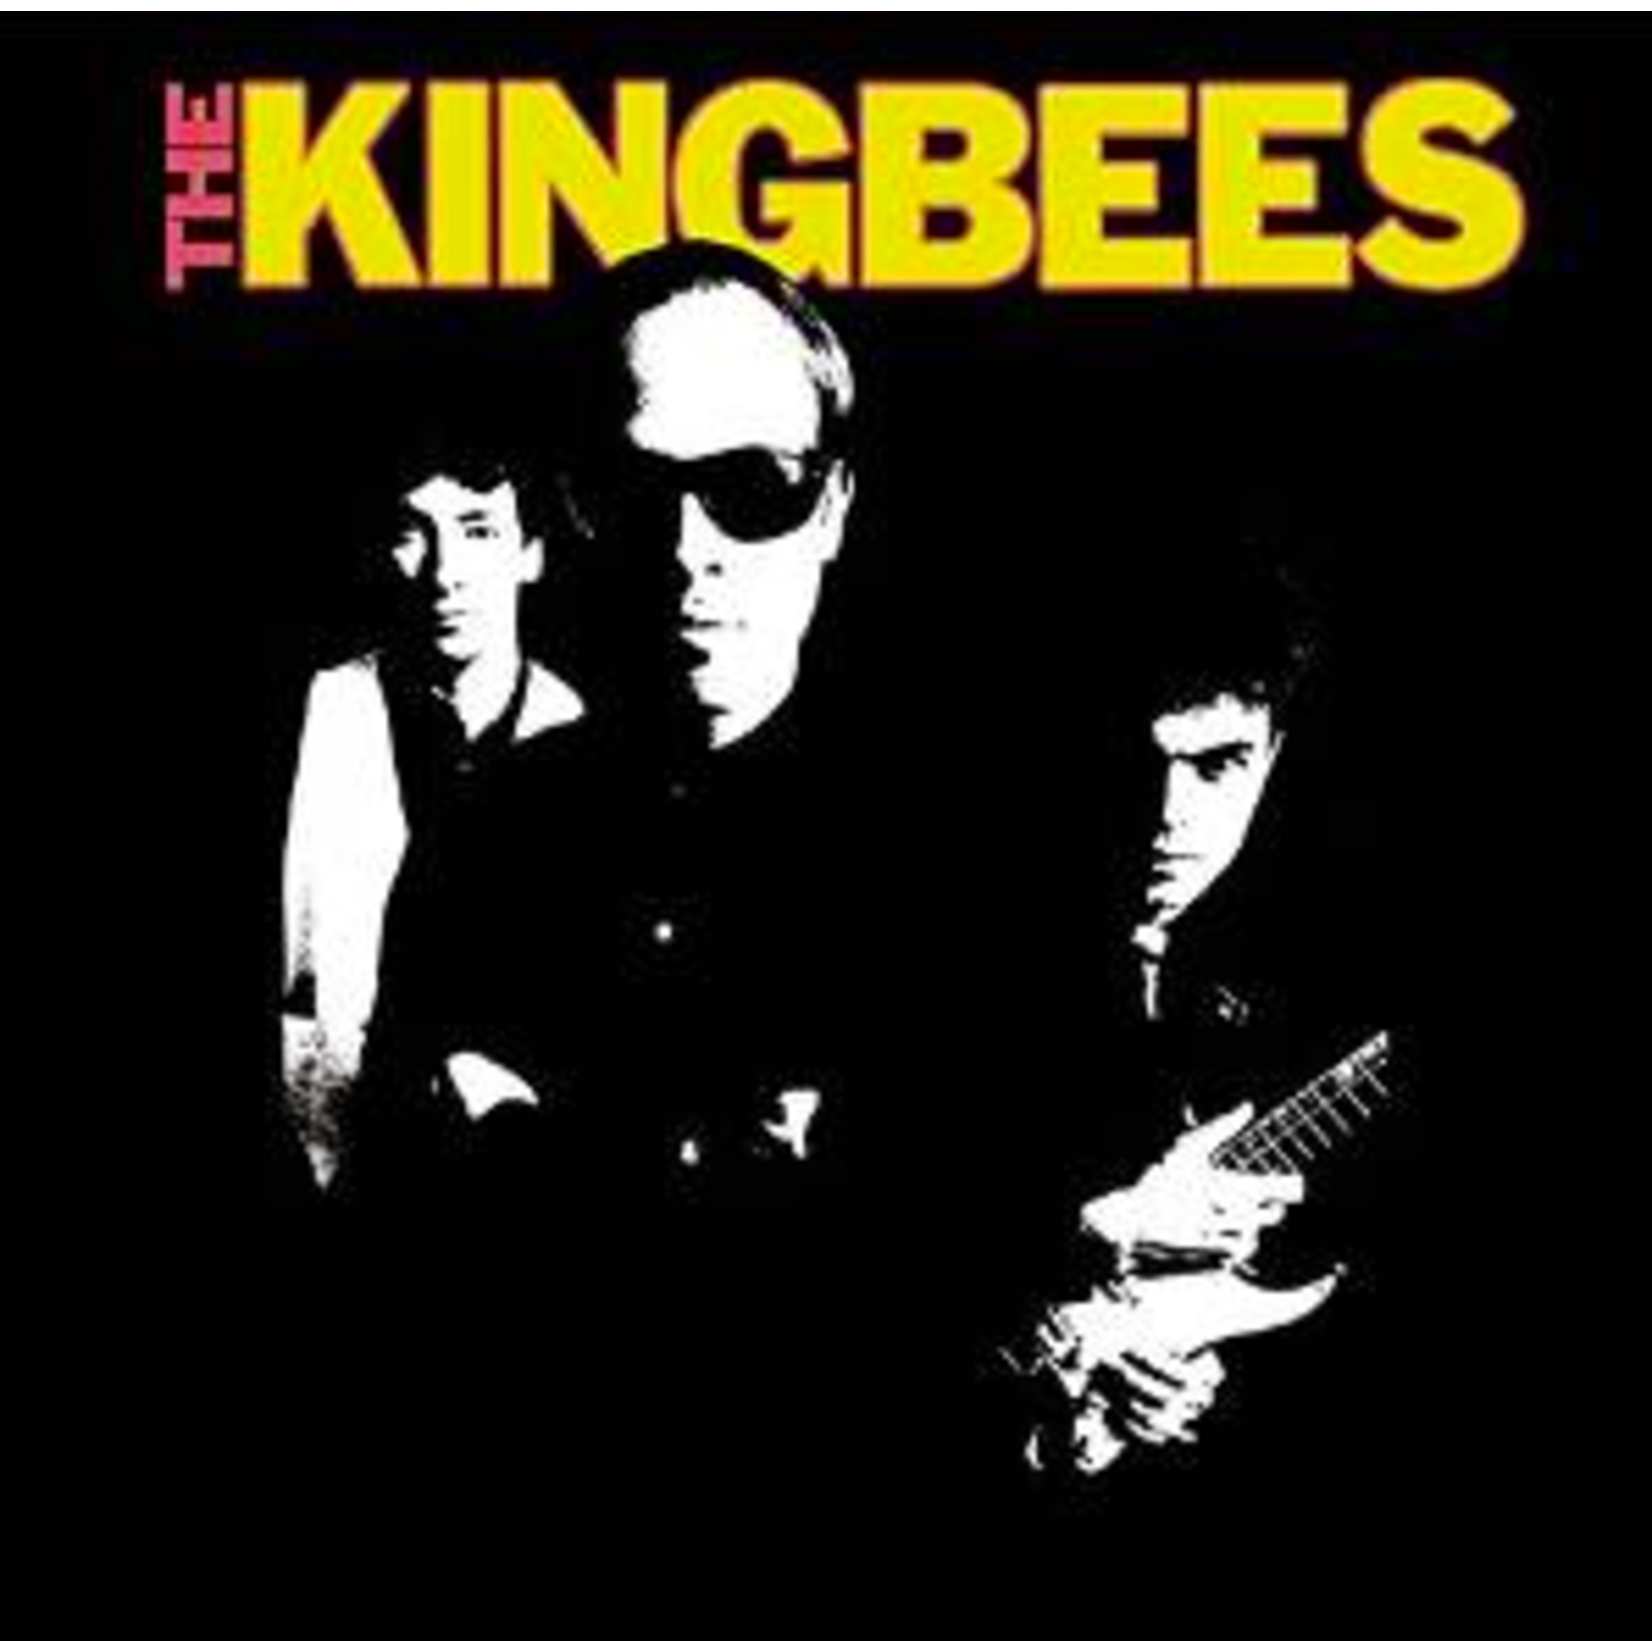 [Vintage] Kingbees - self-titled